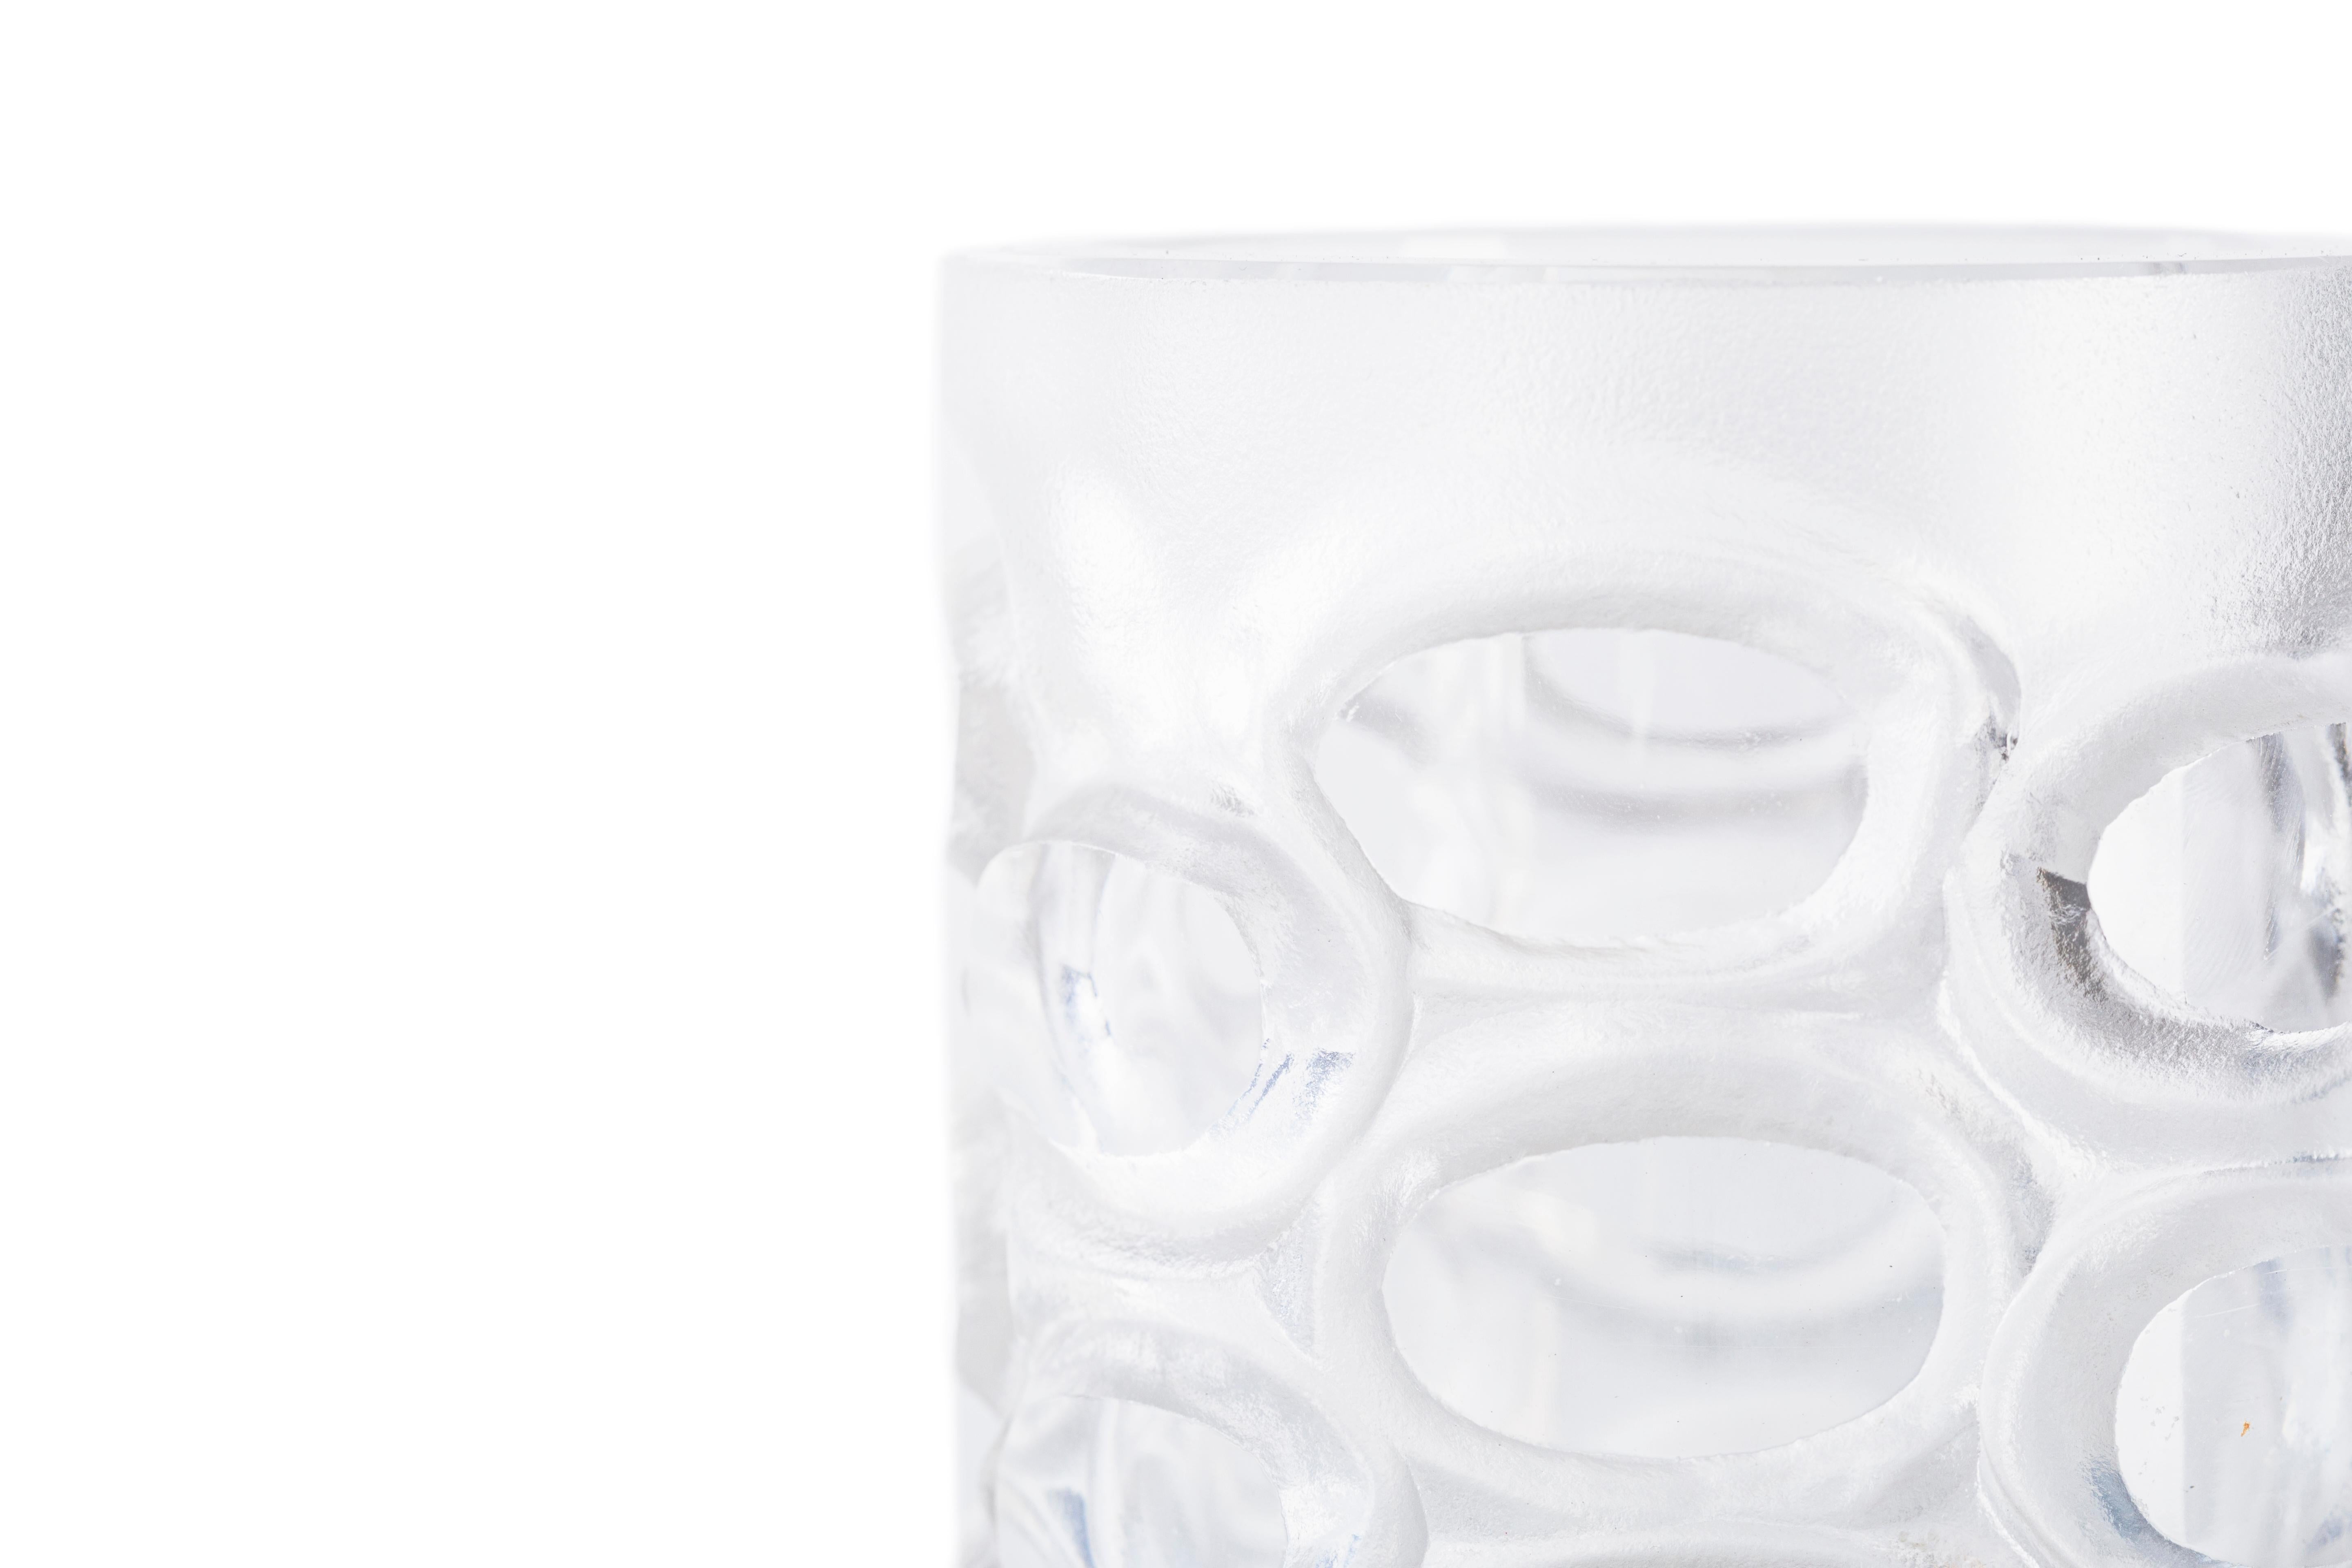 Le vase en verre est un objet décoratif original en verre, probablement produit en Autriche dans les années 1950 du 20e siècle.

De forme cylindrique, ce vase est joliment décoré d'un motif lenticulaire. Une petite marque se trouve sur la base.